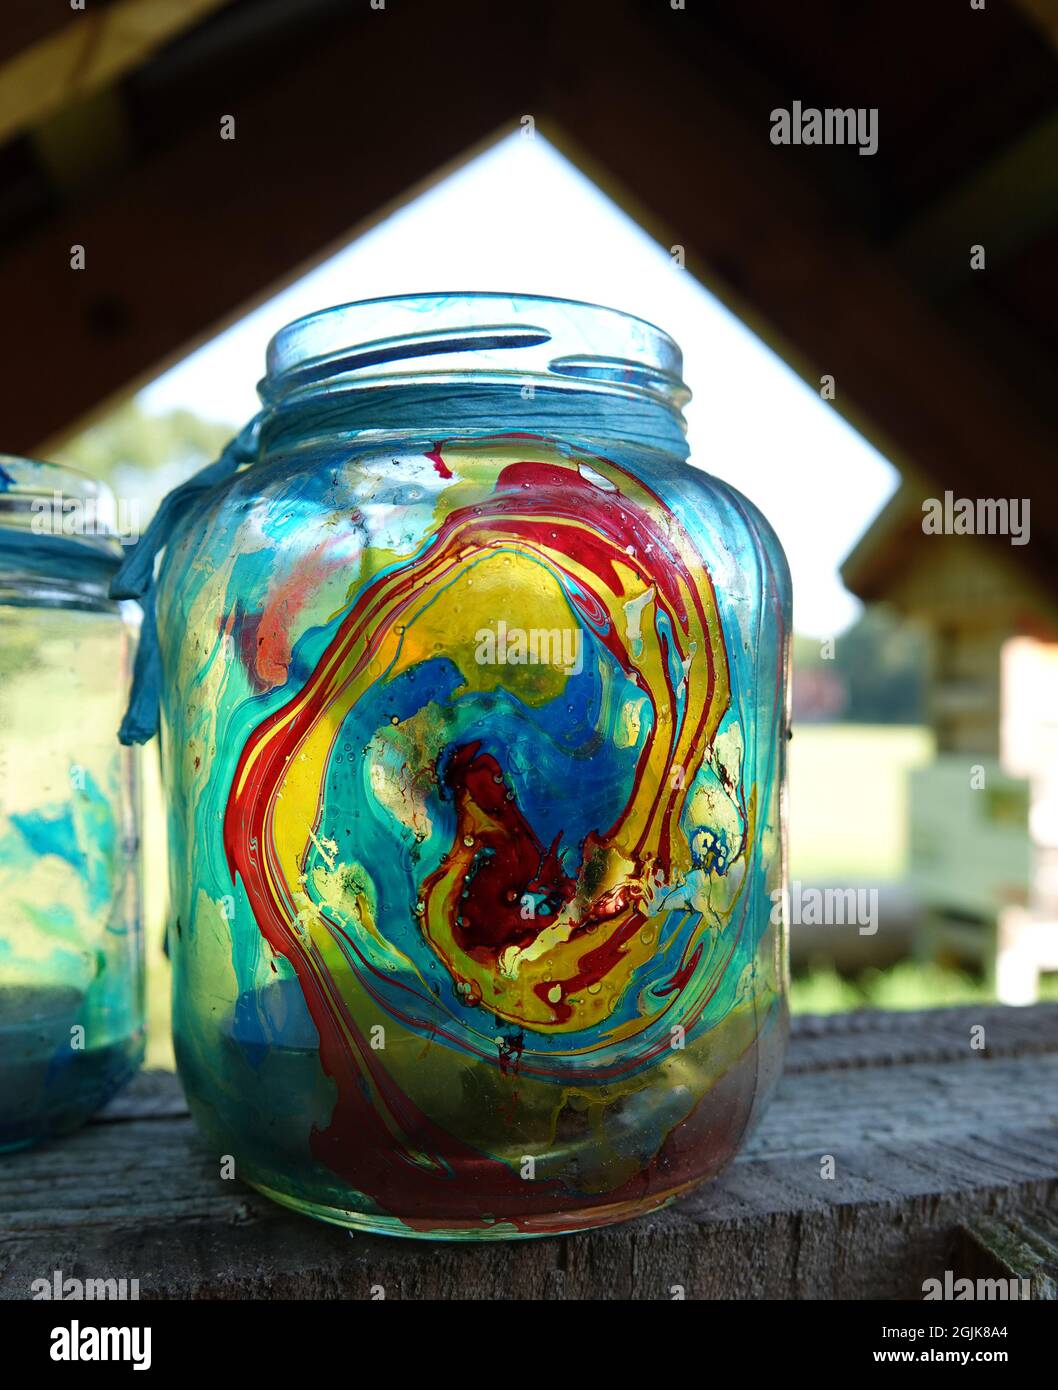 Ein Glasgefäß mit Farbe und einer Teeleuchte im Inneren, die auf einem offenen Schuppen steht Stockfoto